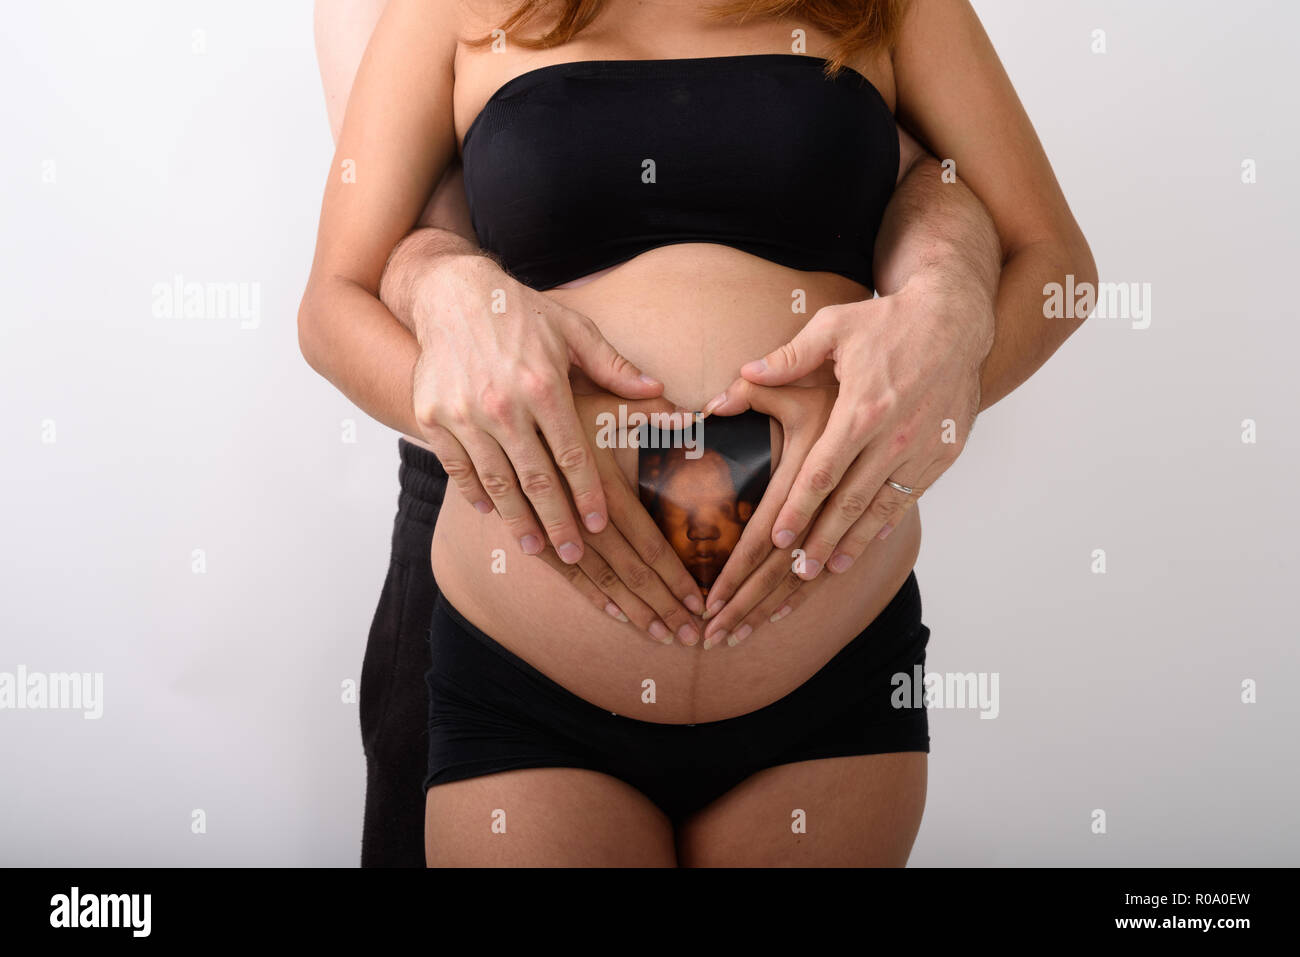 Asiatische schwangere Frau Holding sonogram Ihres Babys mit Ehemann Stockfoto